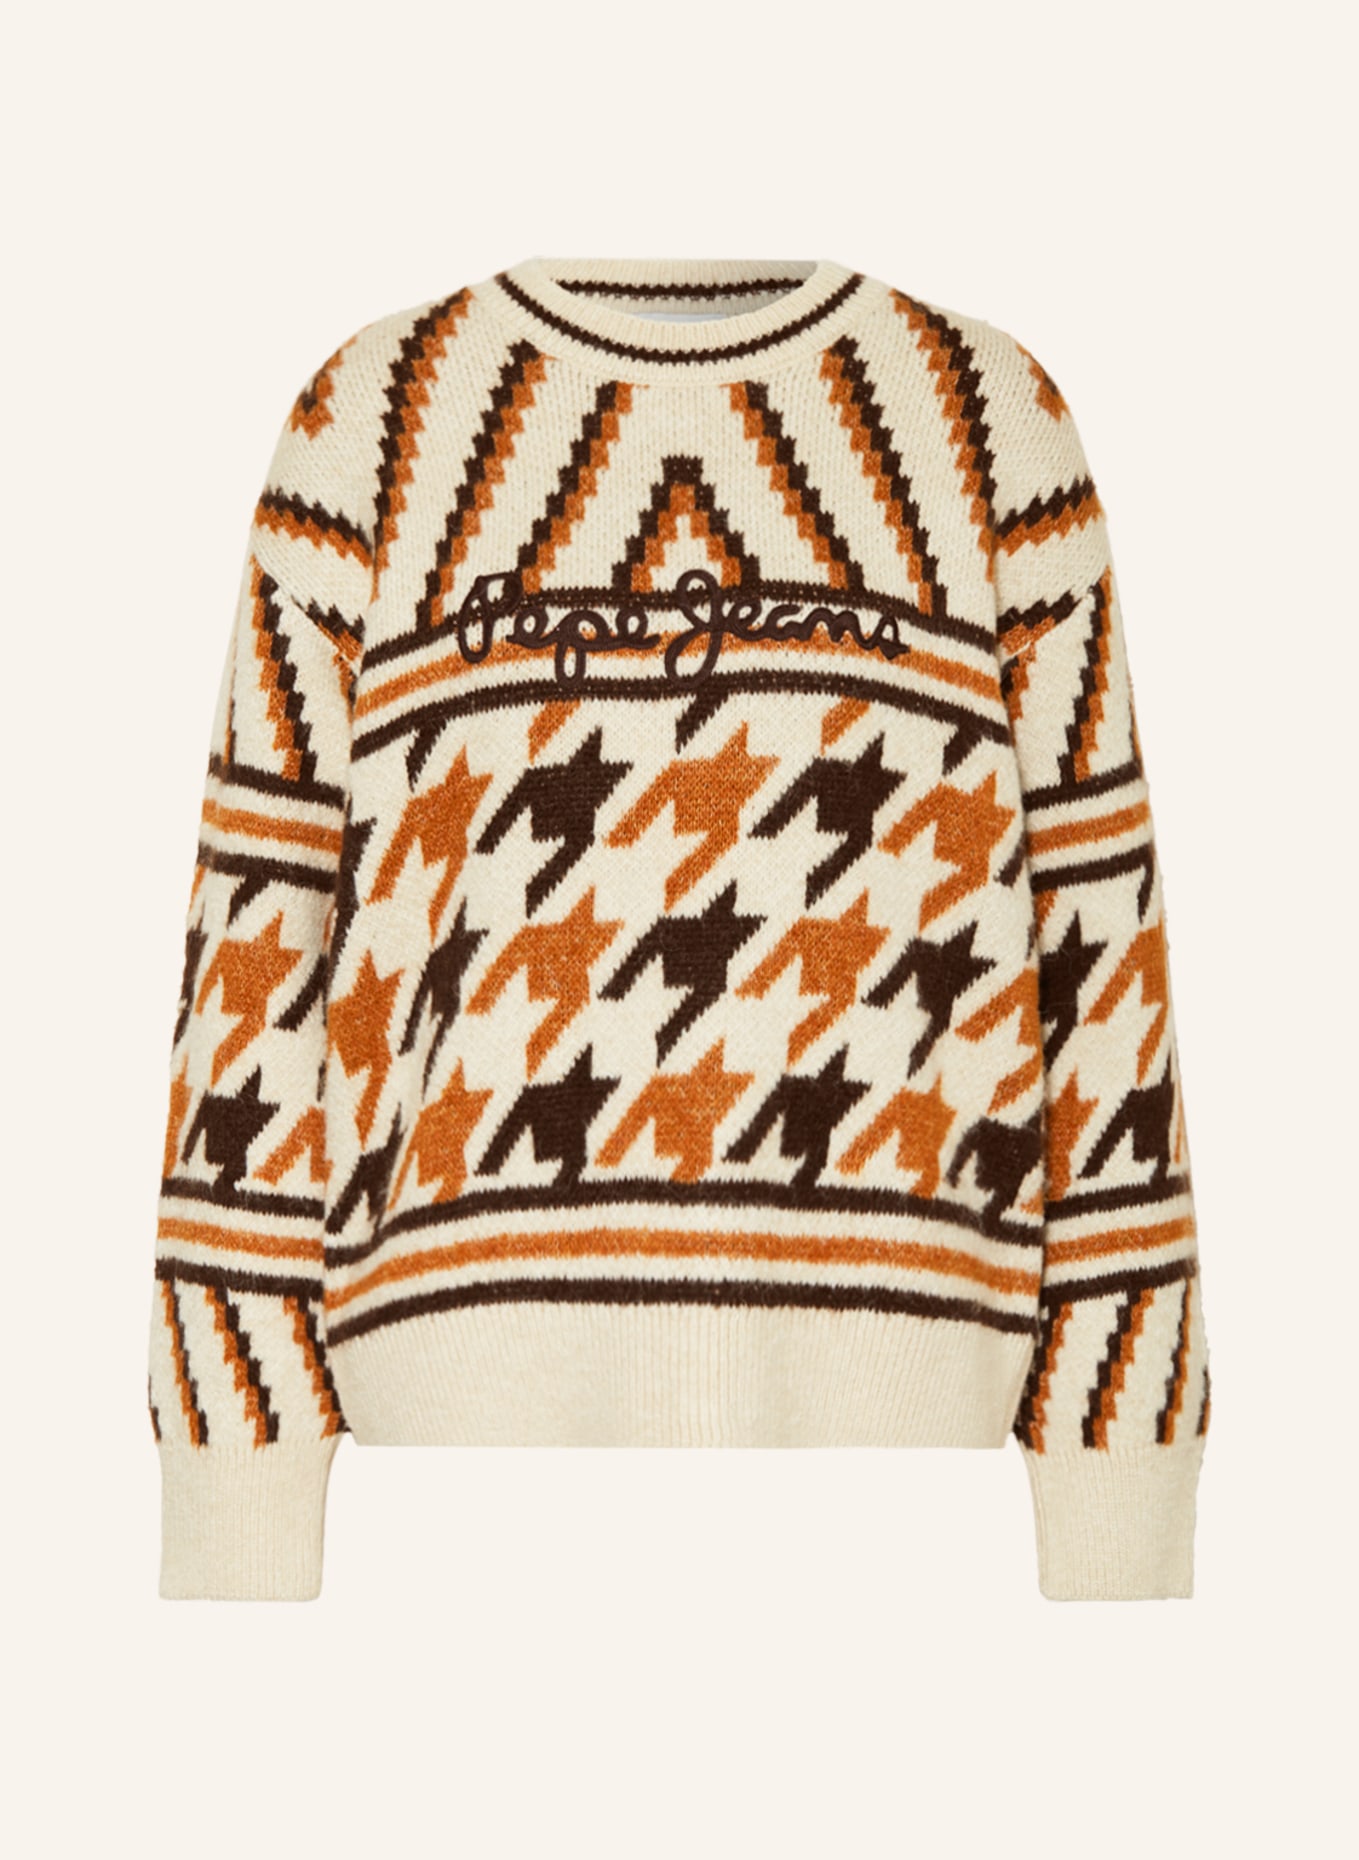 Pepe Jeans Sweater DEANNA in ecru/ cognac/ dark brown